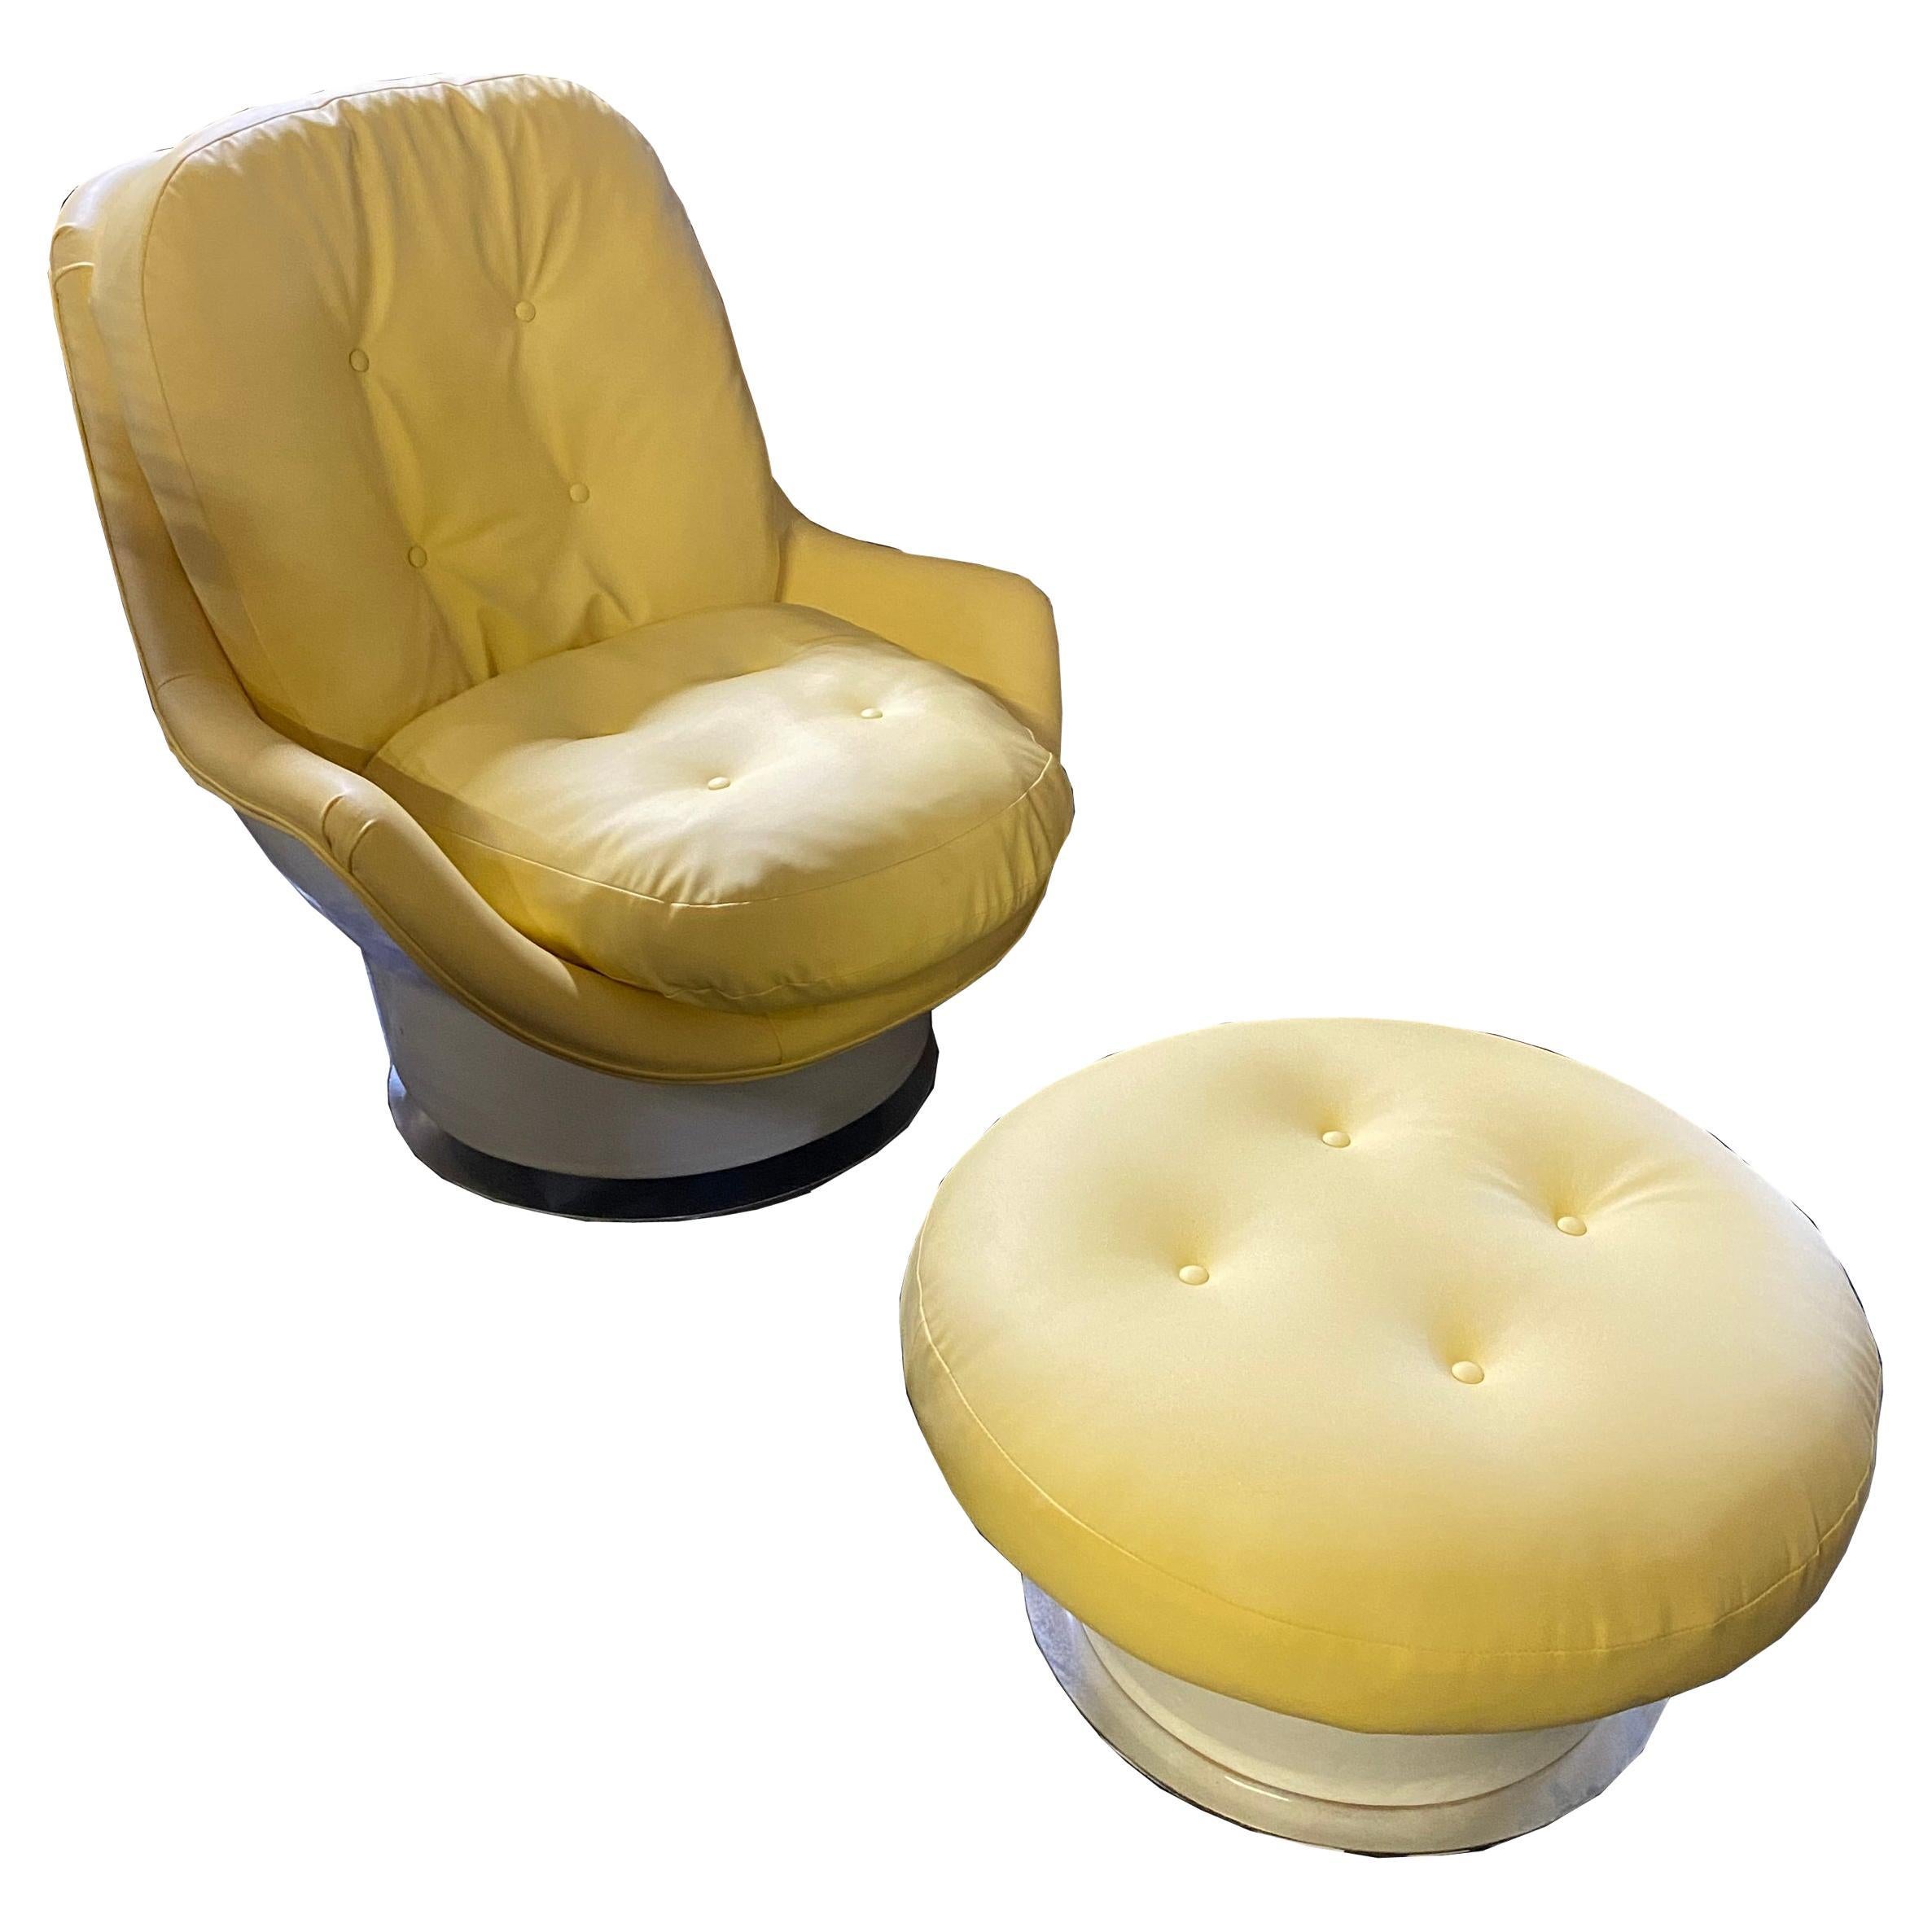 Vintage Milo Baughman Thayer Coggin Lounge Chair and Ottoman

Rare chaise longue et ottoman des années 70. Dossier et base en fibre de verre avec ottoman assorti sur base chromée. 
Les rochers et les pivots. Récemment restauré dans un riche cuir